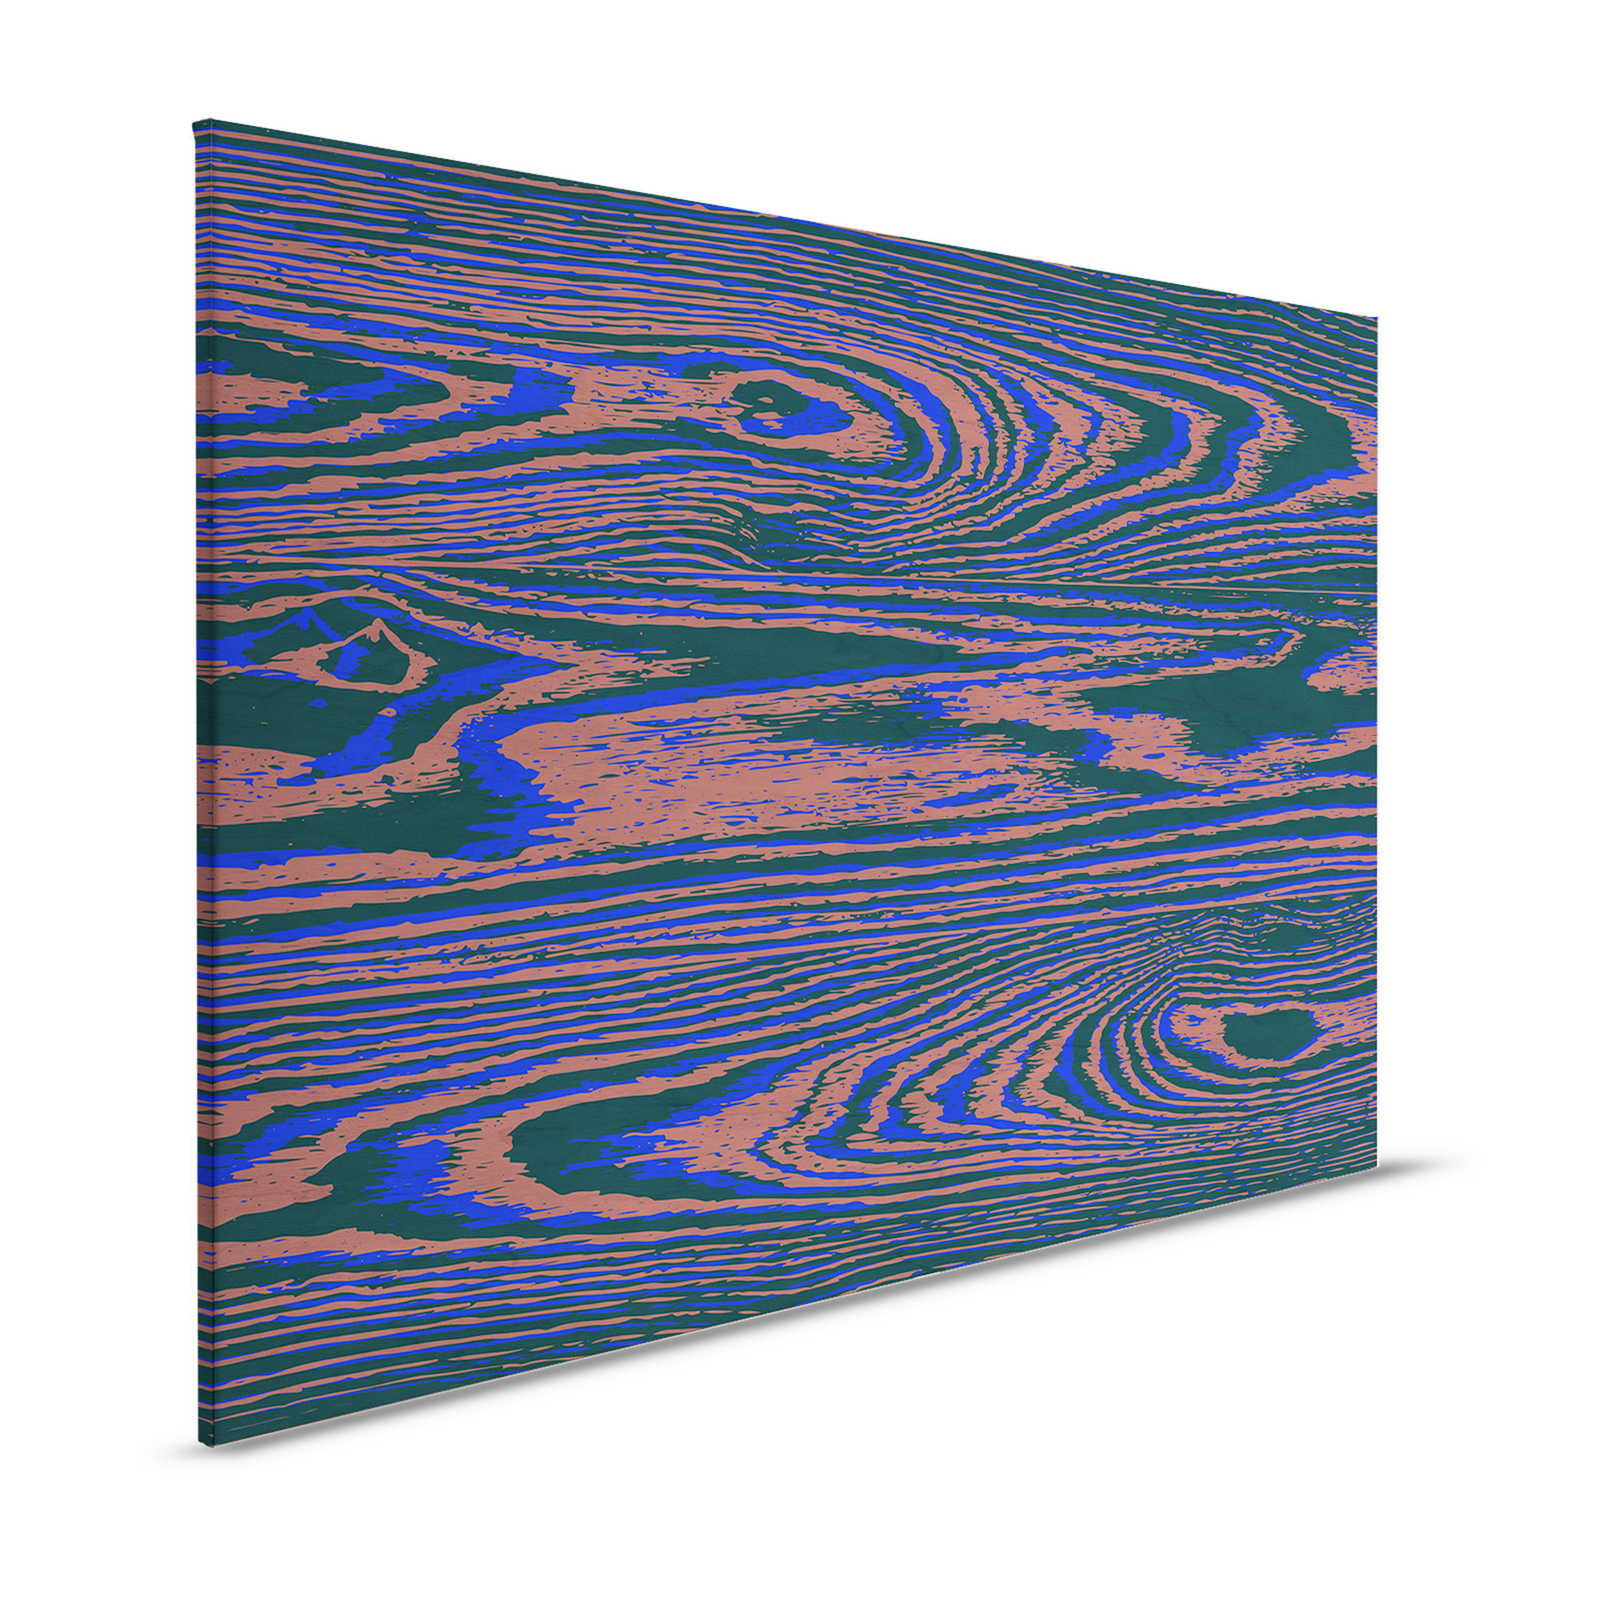 Kontiki 3 - Quadro su tela Neon Wood Grain, Viola e Nero - 1,20 m x 0,80 m
